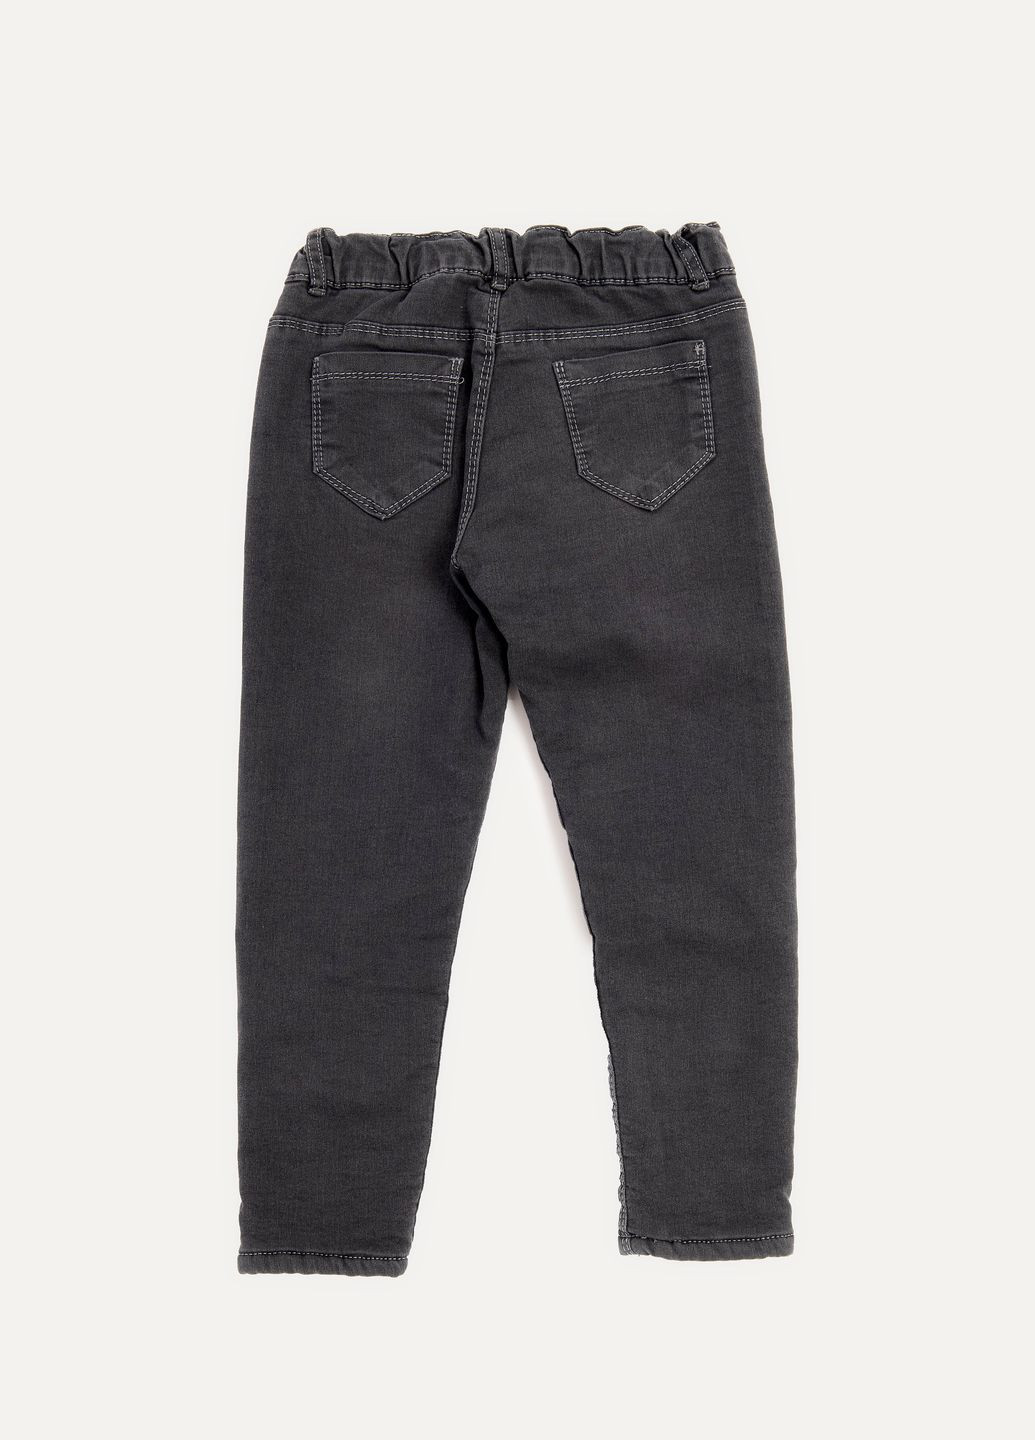 Серые зимние джинсы утепленные для девочки цвет серый цб-00230442 Sercino